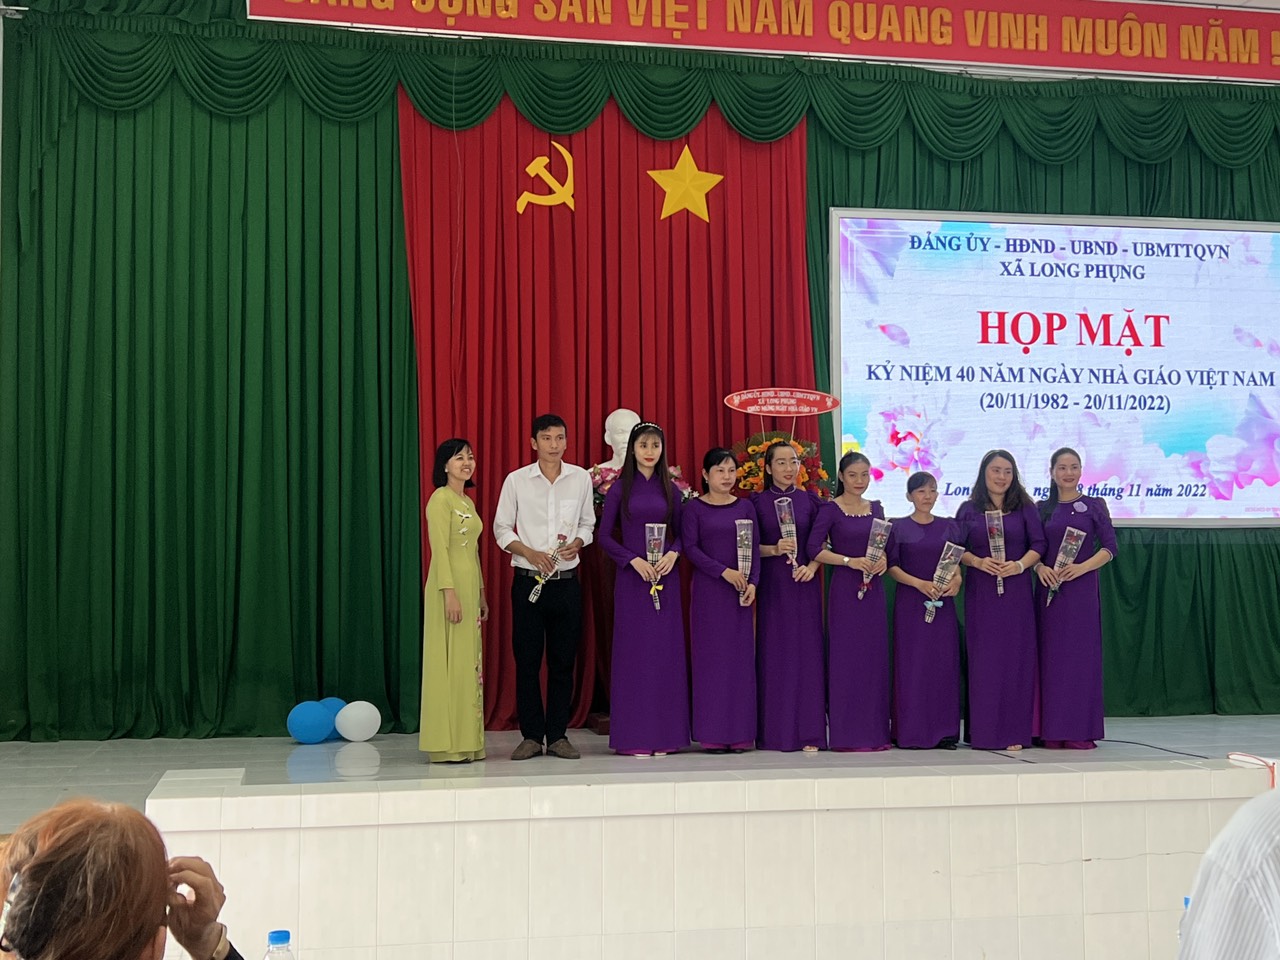 Tổ chức ngày họp mặt Nhà giáo Việt Nam nhân kỷ niệm 40 năm ngày nhà giáo việt nam(20/11/1982-20/11/2022)